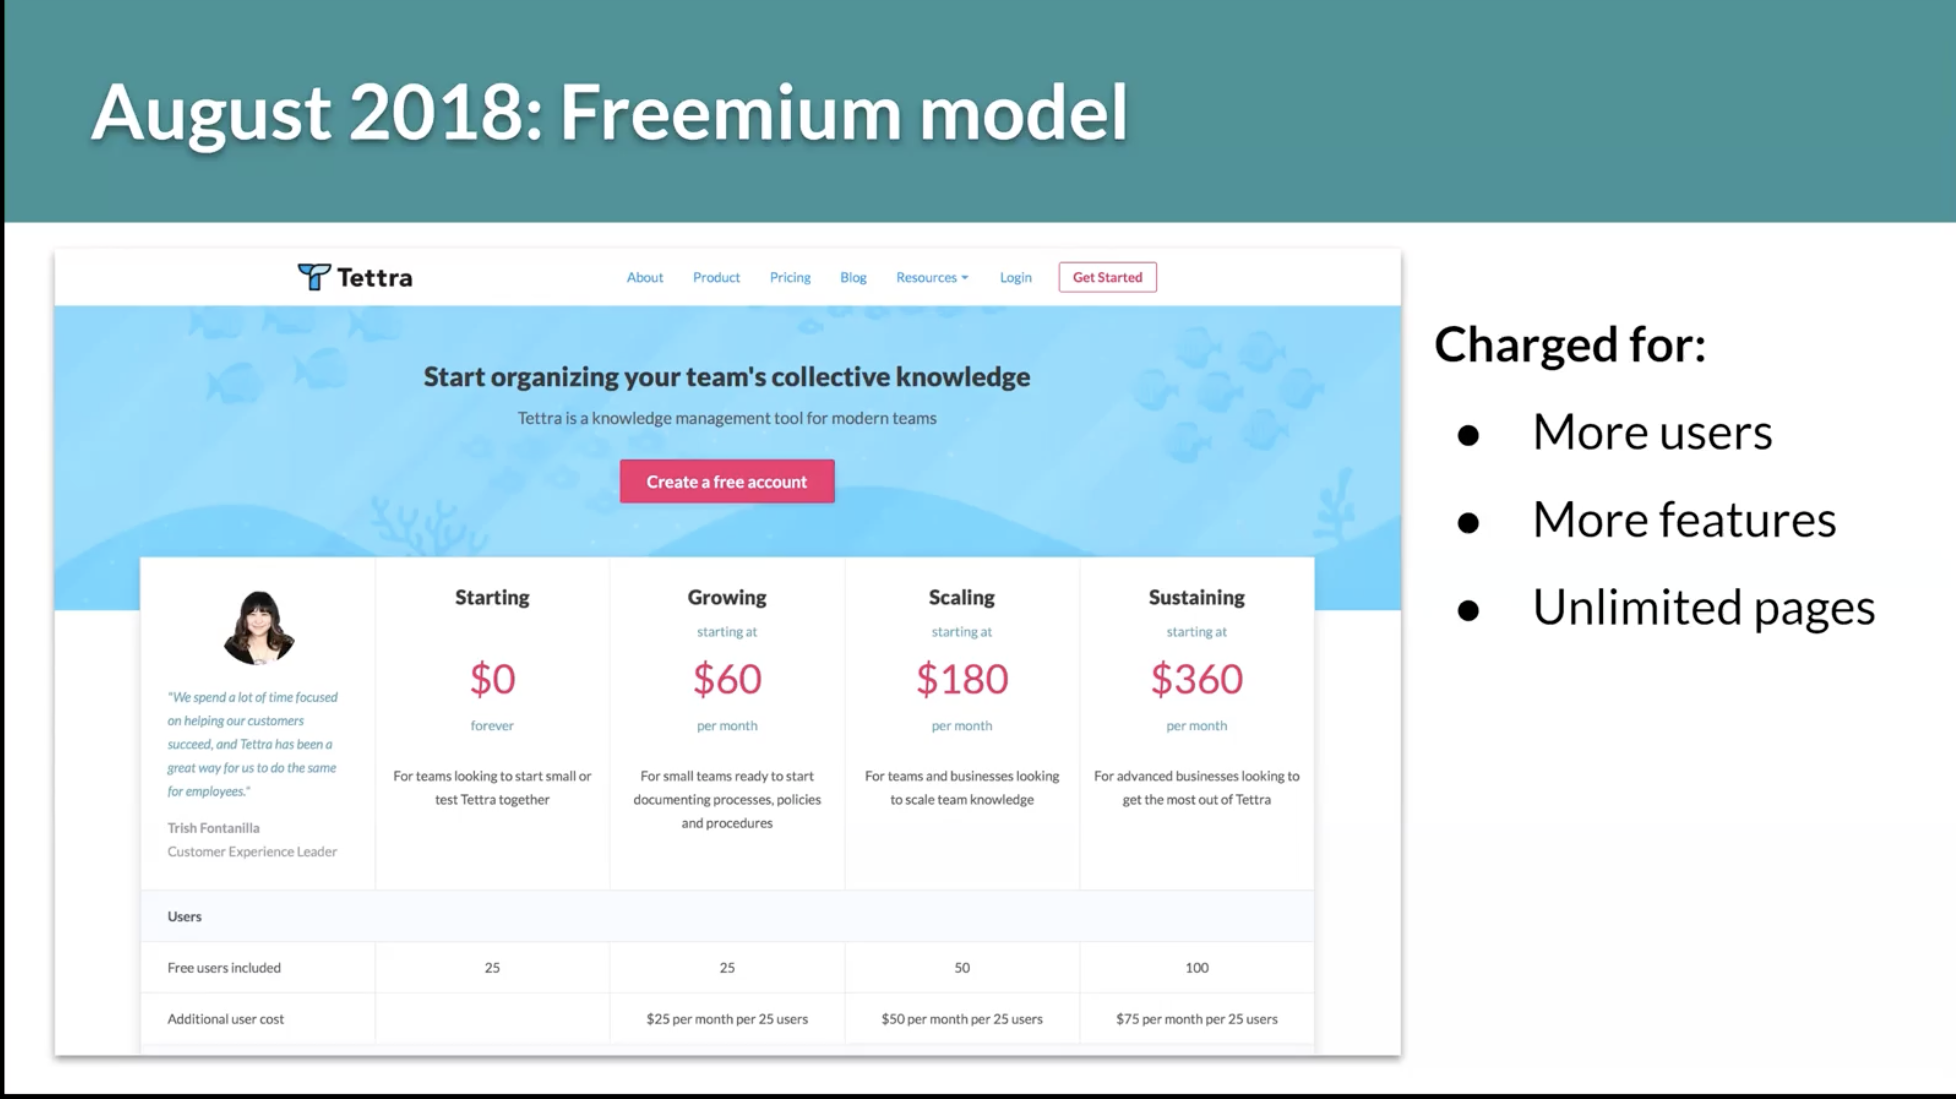 Tettra's August 2018 freemium model